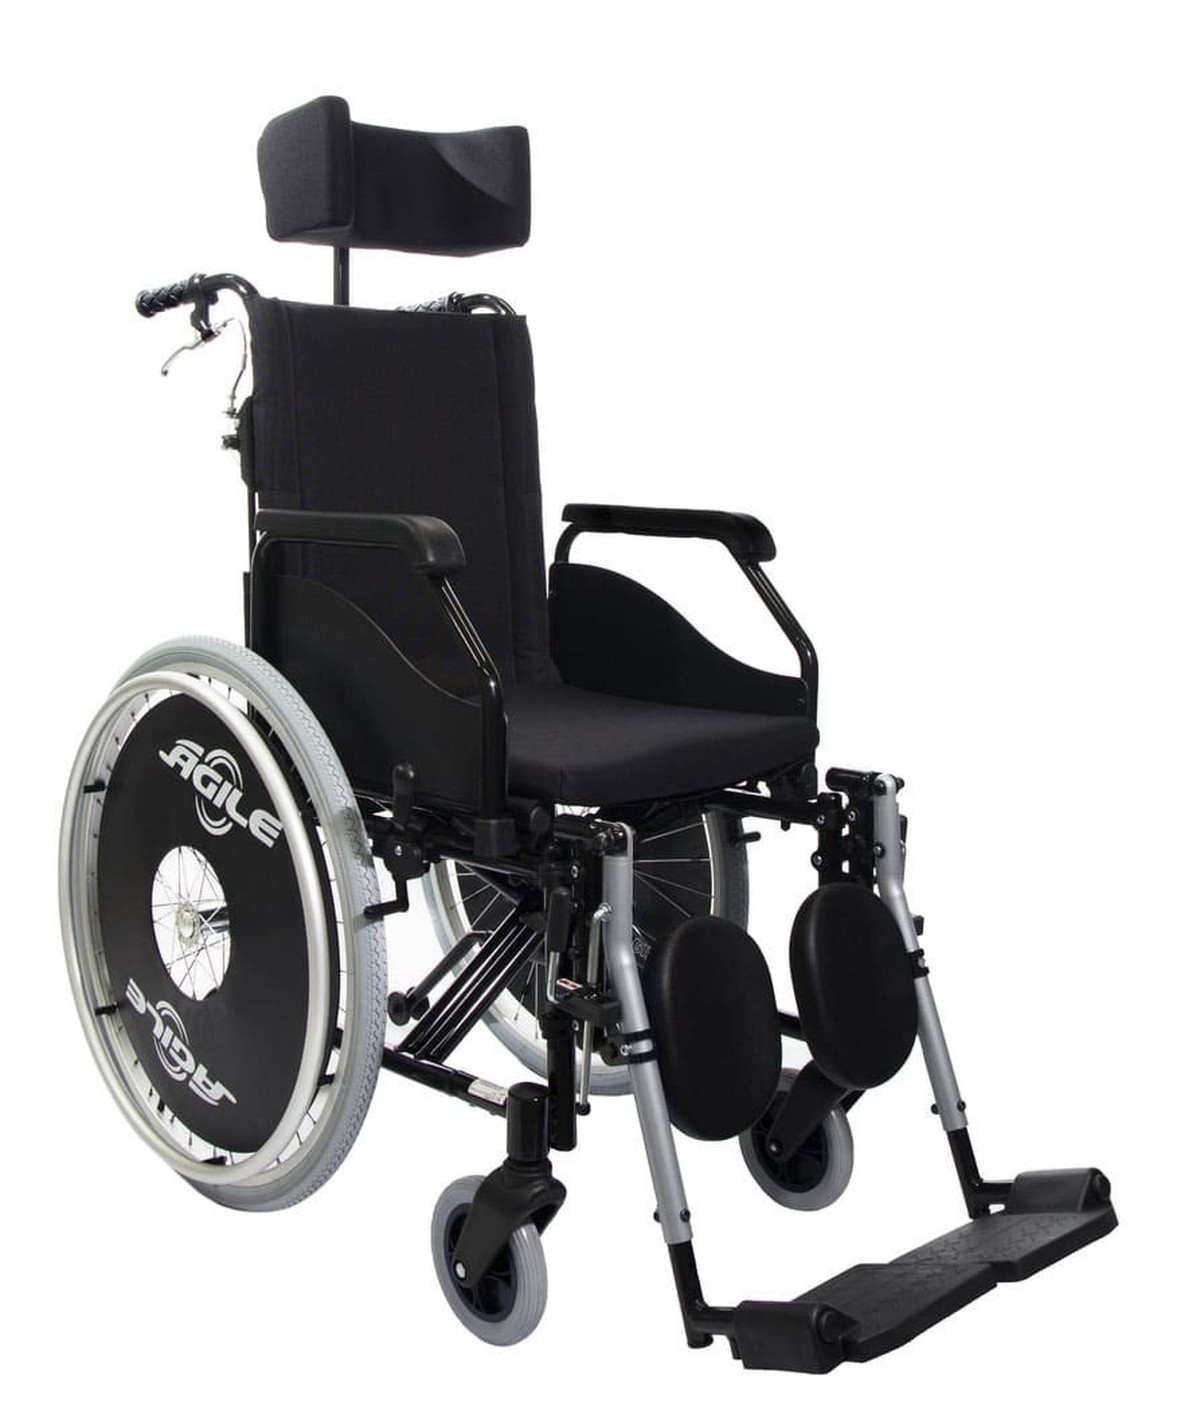 Foto do produto Cadeira de Rodas Agile Reclinavel até 120kg